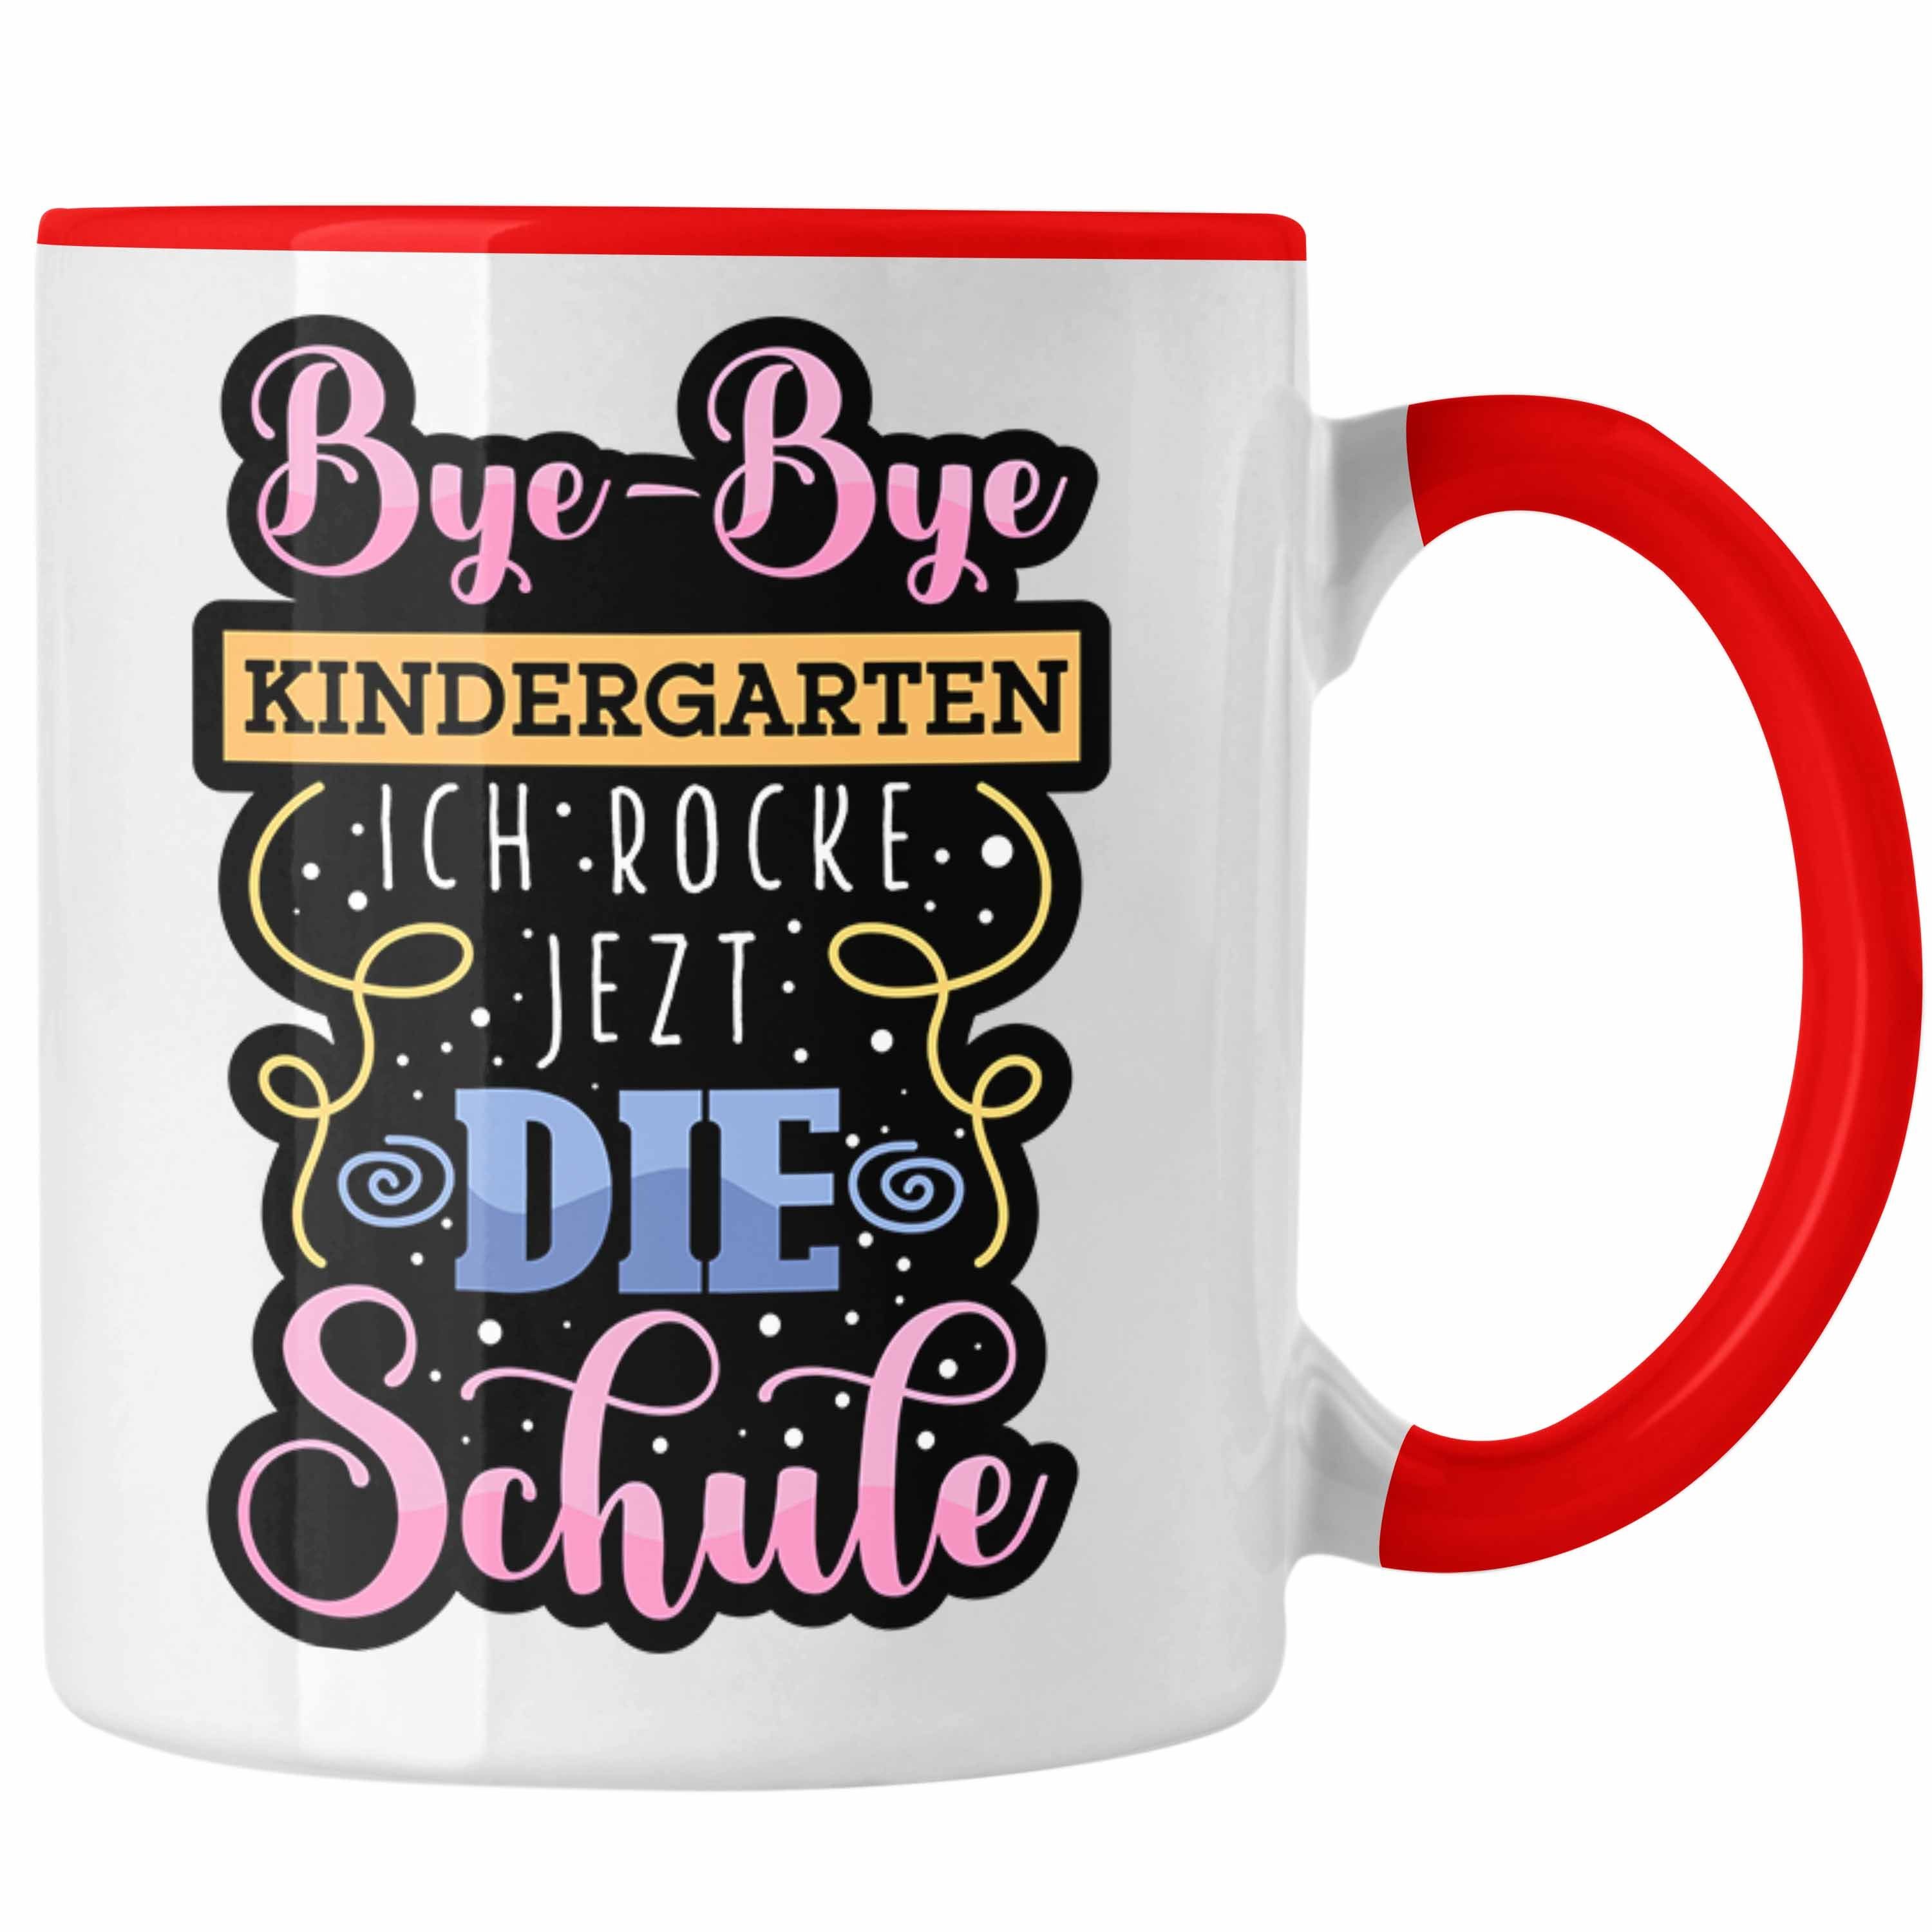 rocke Einschulung "Bye-Bye Rot G Kindergarten, Ich Tasse Tasse die jetzt Trendation Schule"